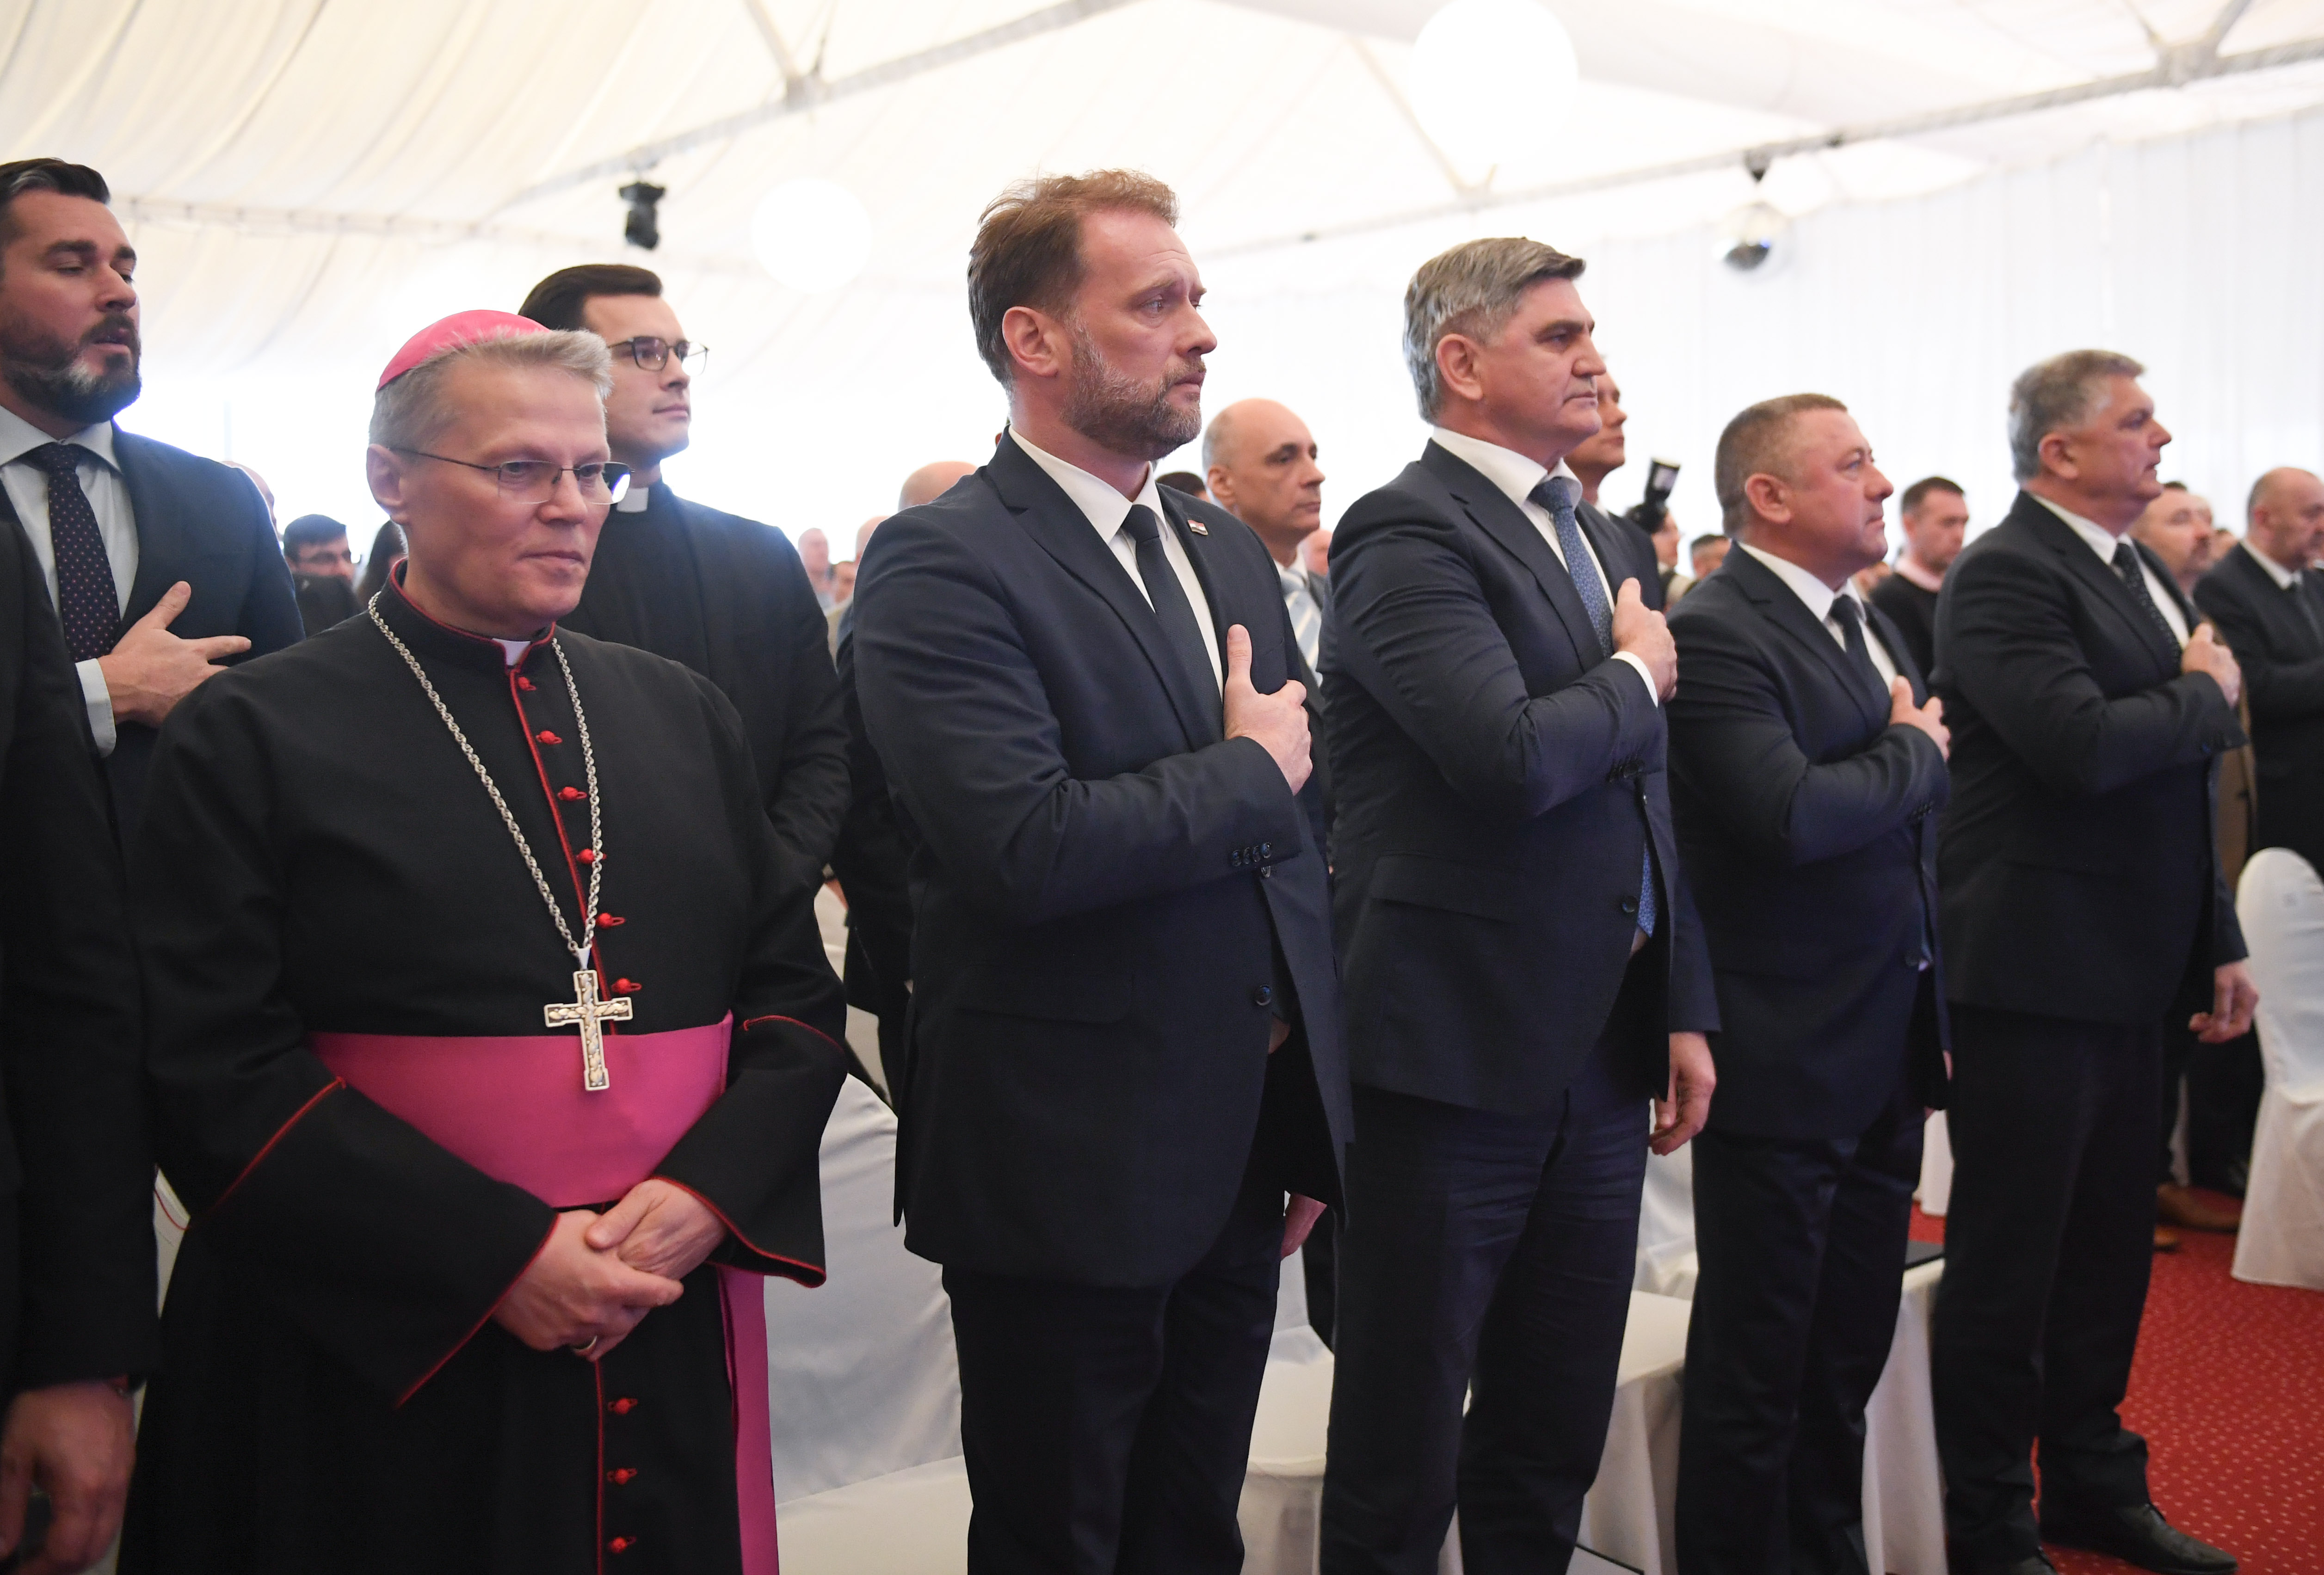 Ministar Banožić u Iloku: Intenzivni razvoj Slavonije i Baranje u fokusu je Vlade RH